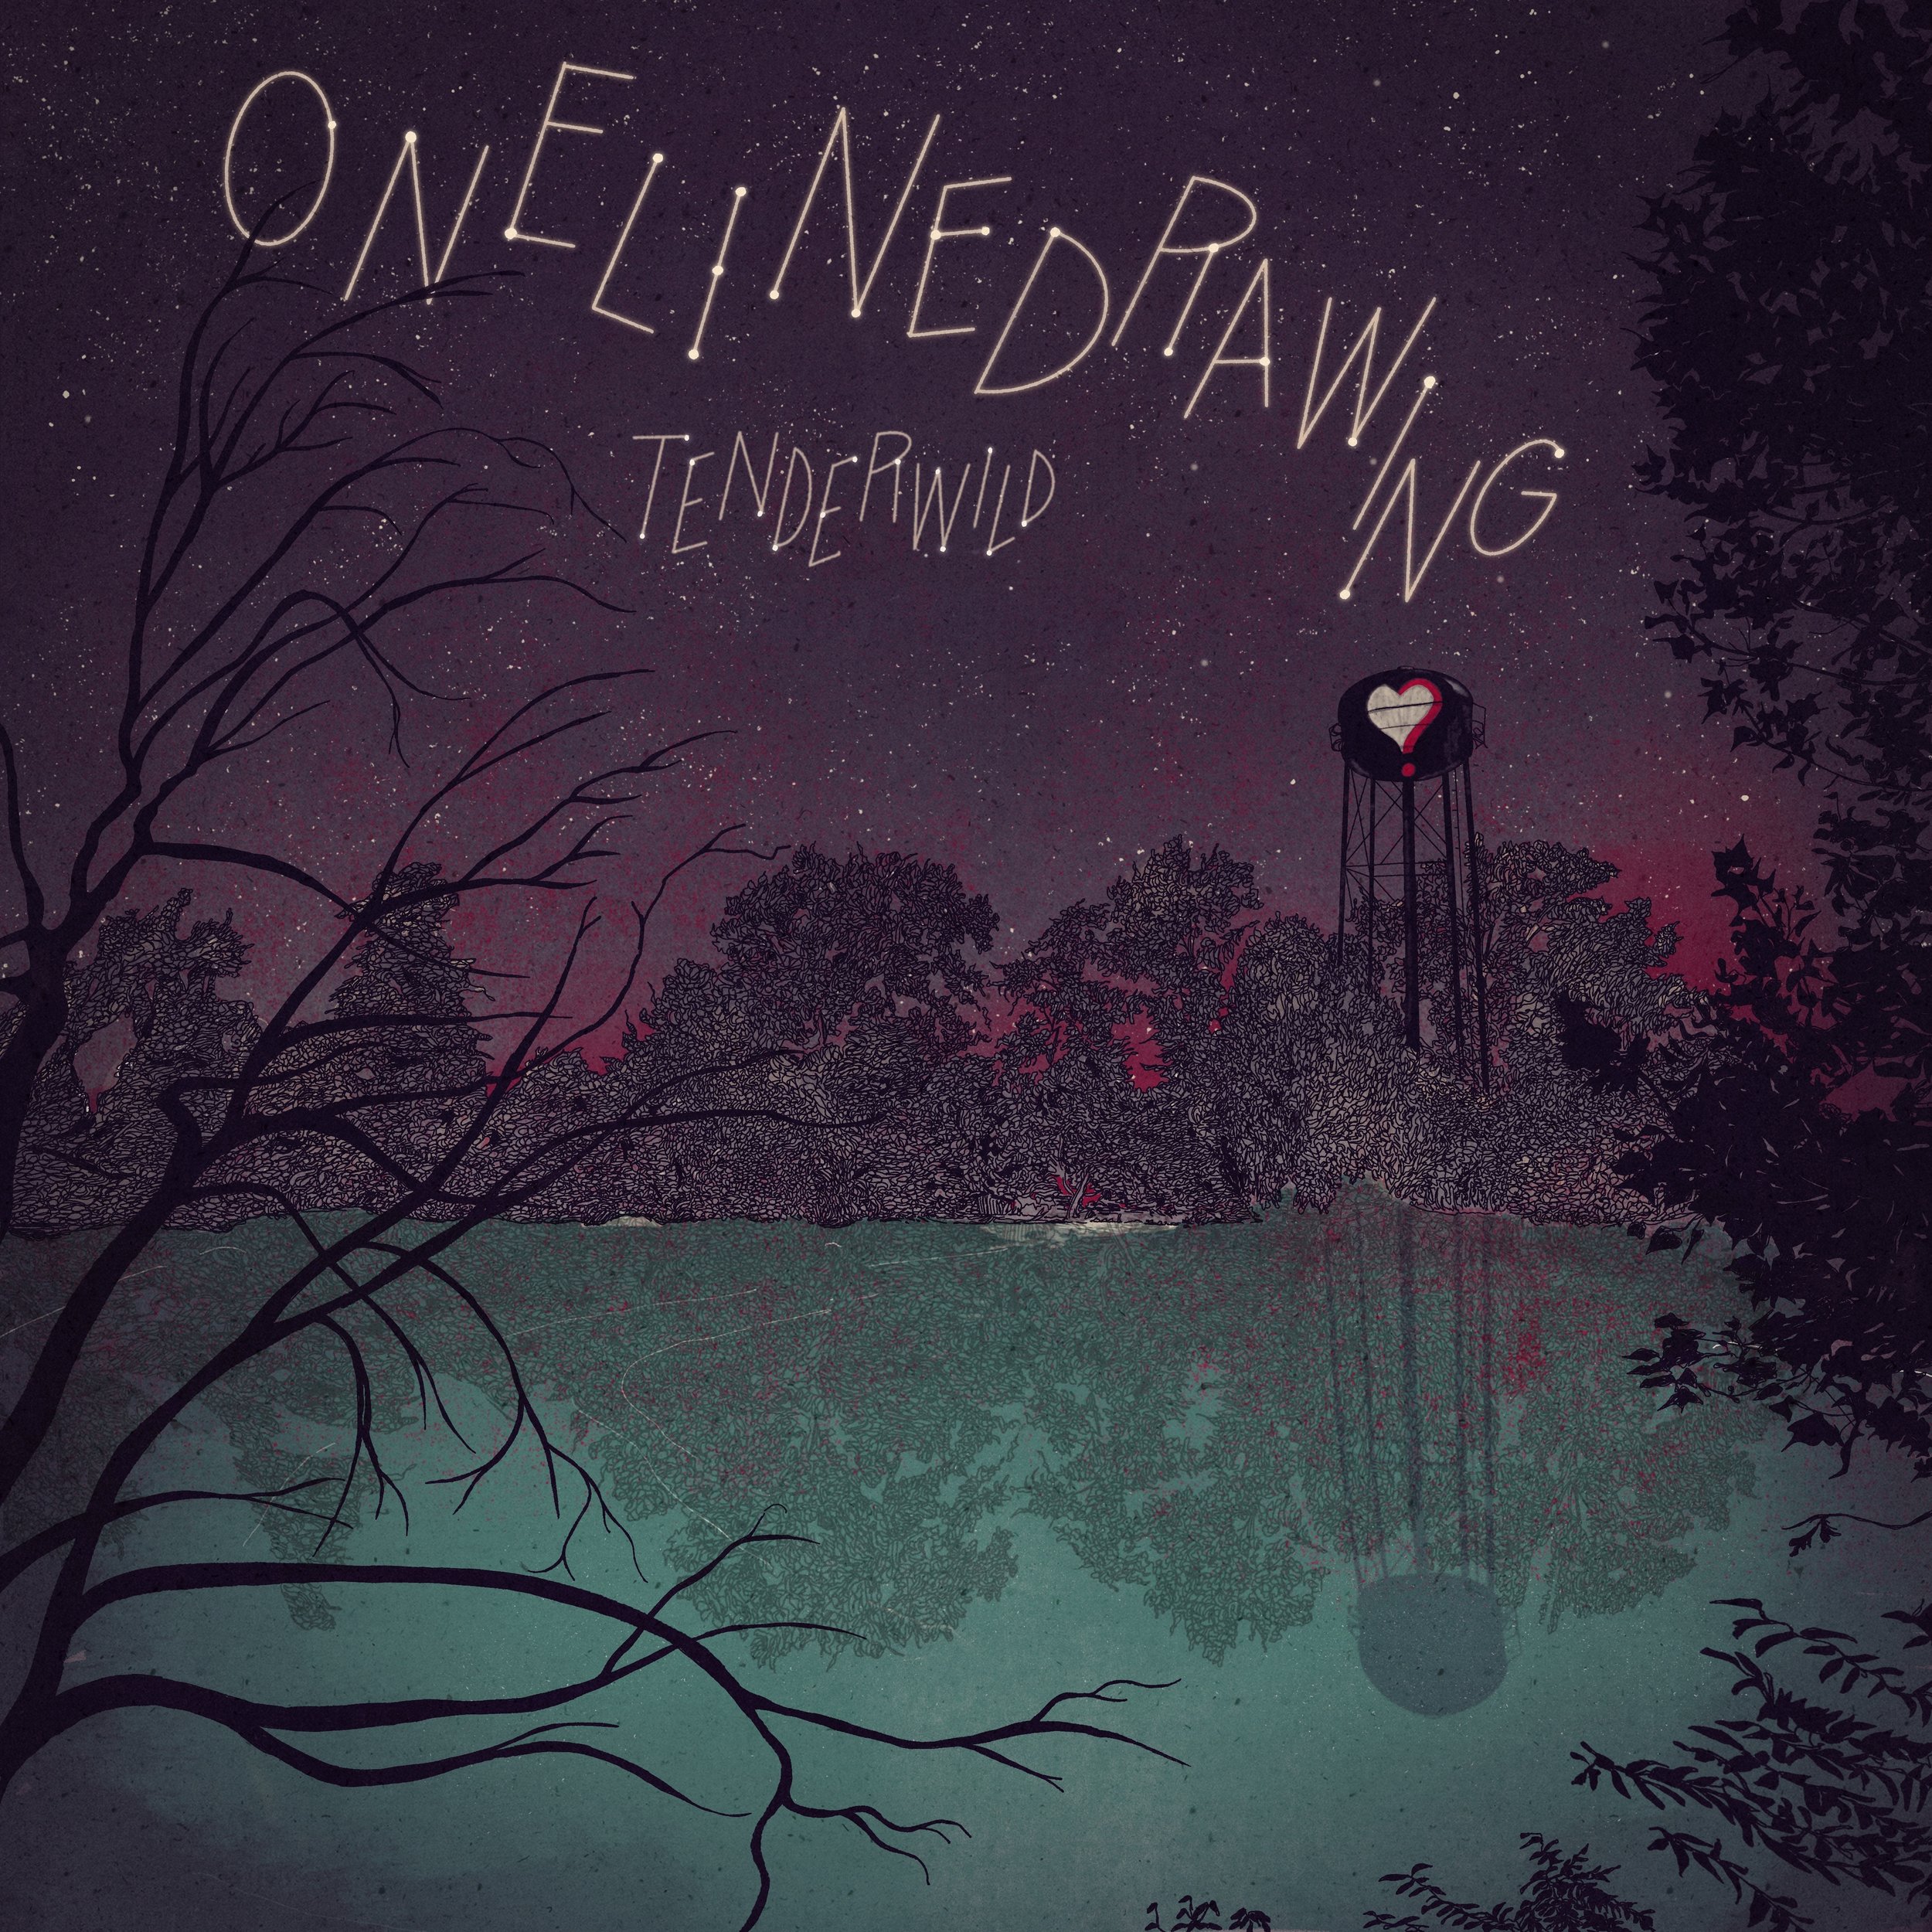 onelinedrawing - tenderwild - cover.jpg